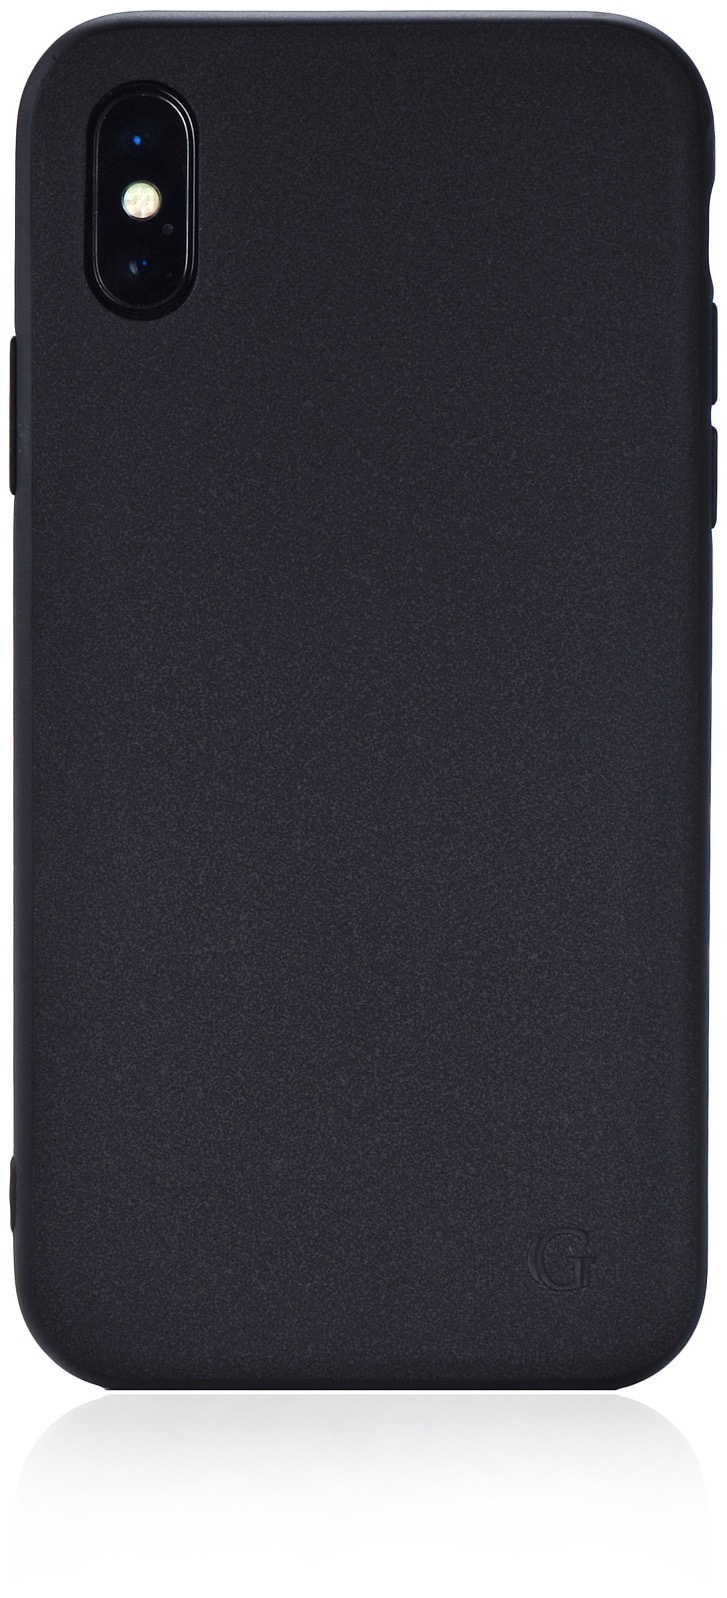 Чехол для сотового телефона Gurdini Grand Eco Series black GGESBK-XM для Apple iPhone XS Max 6.5